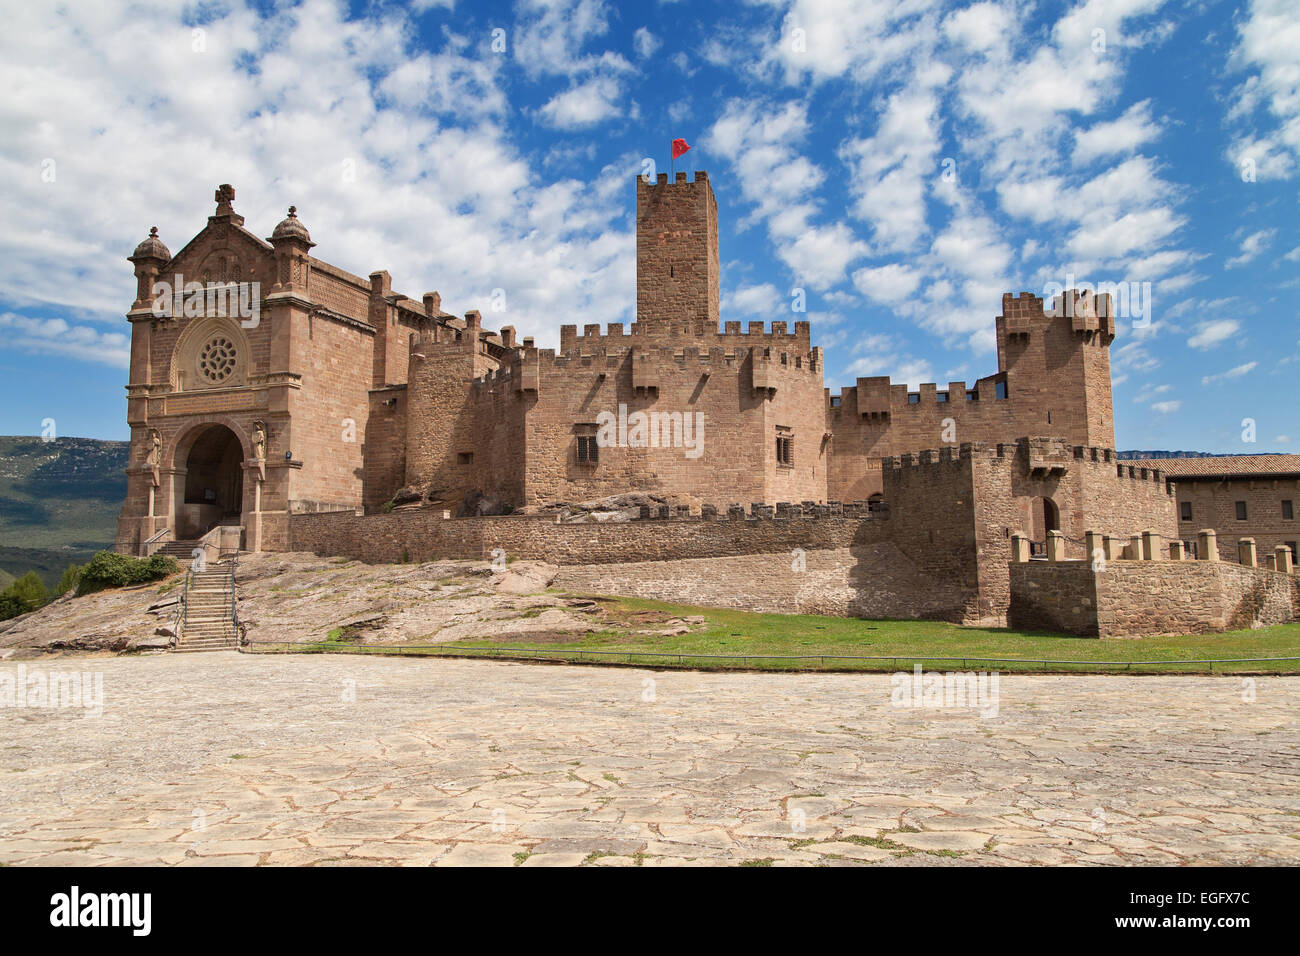 El Castillo de Javier en Navarra, España. Foto de stock